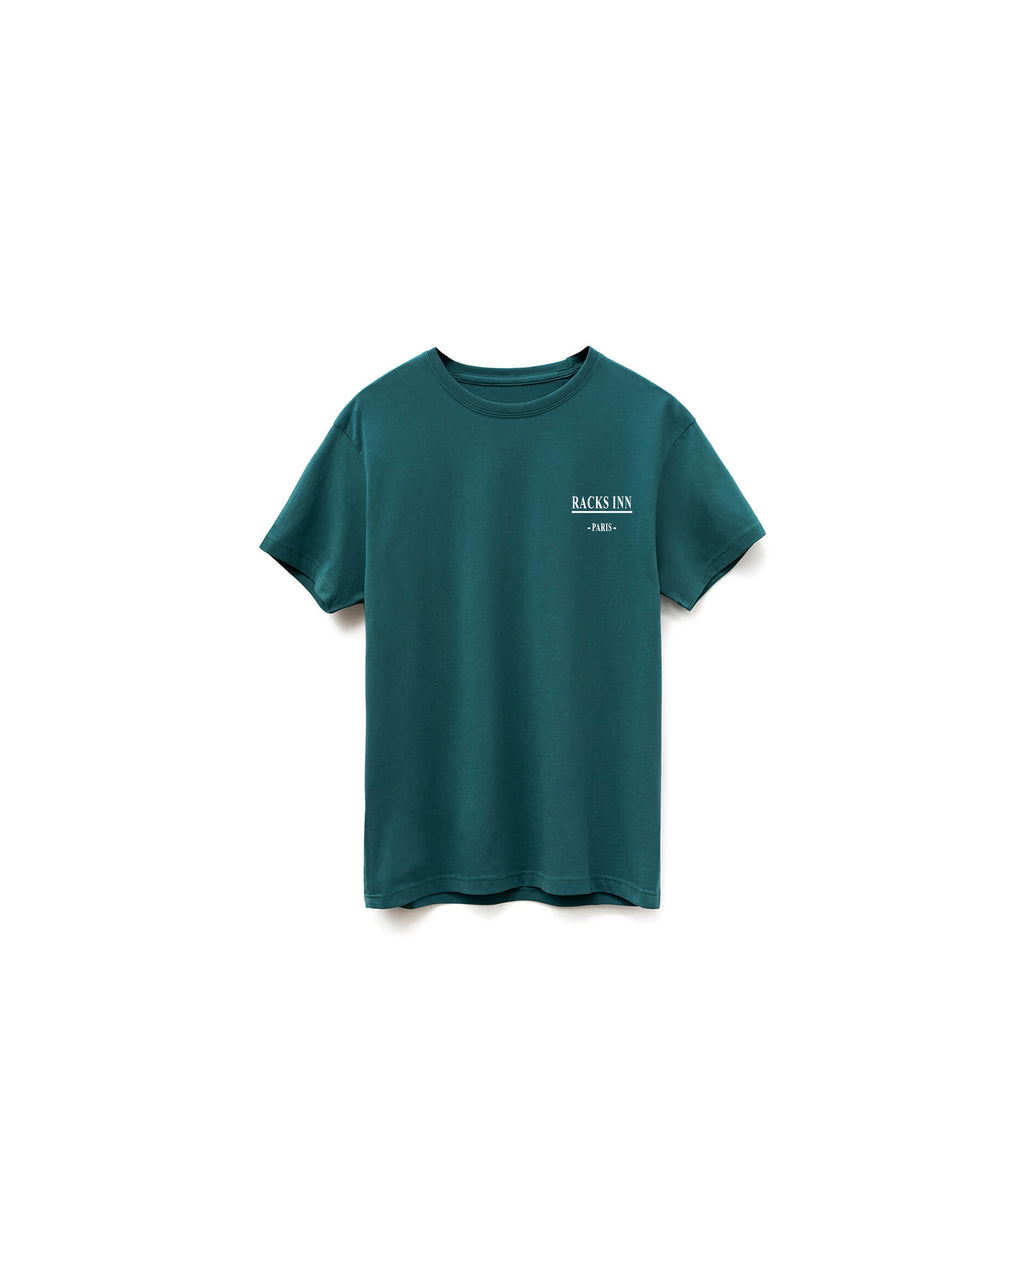 Paris T-Shirt - Teal